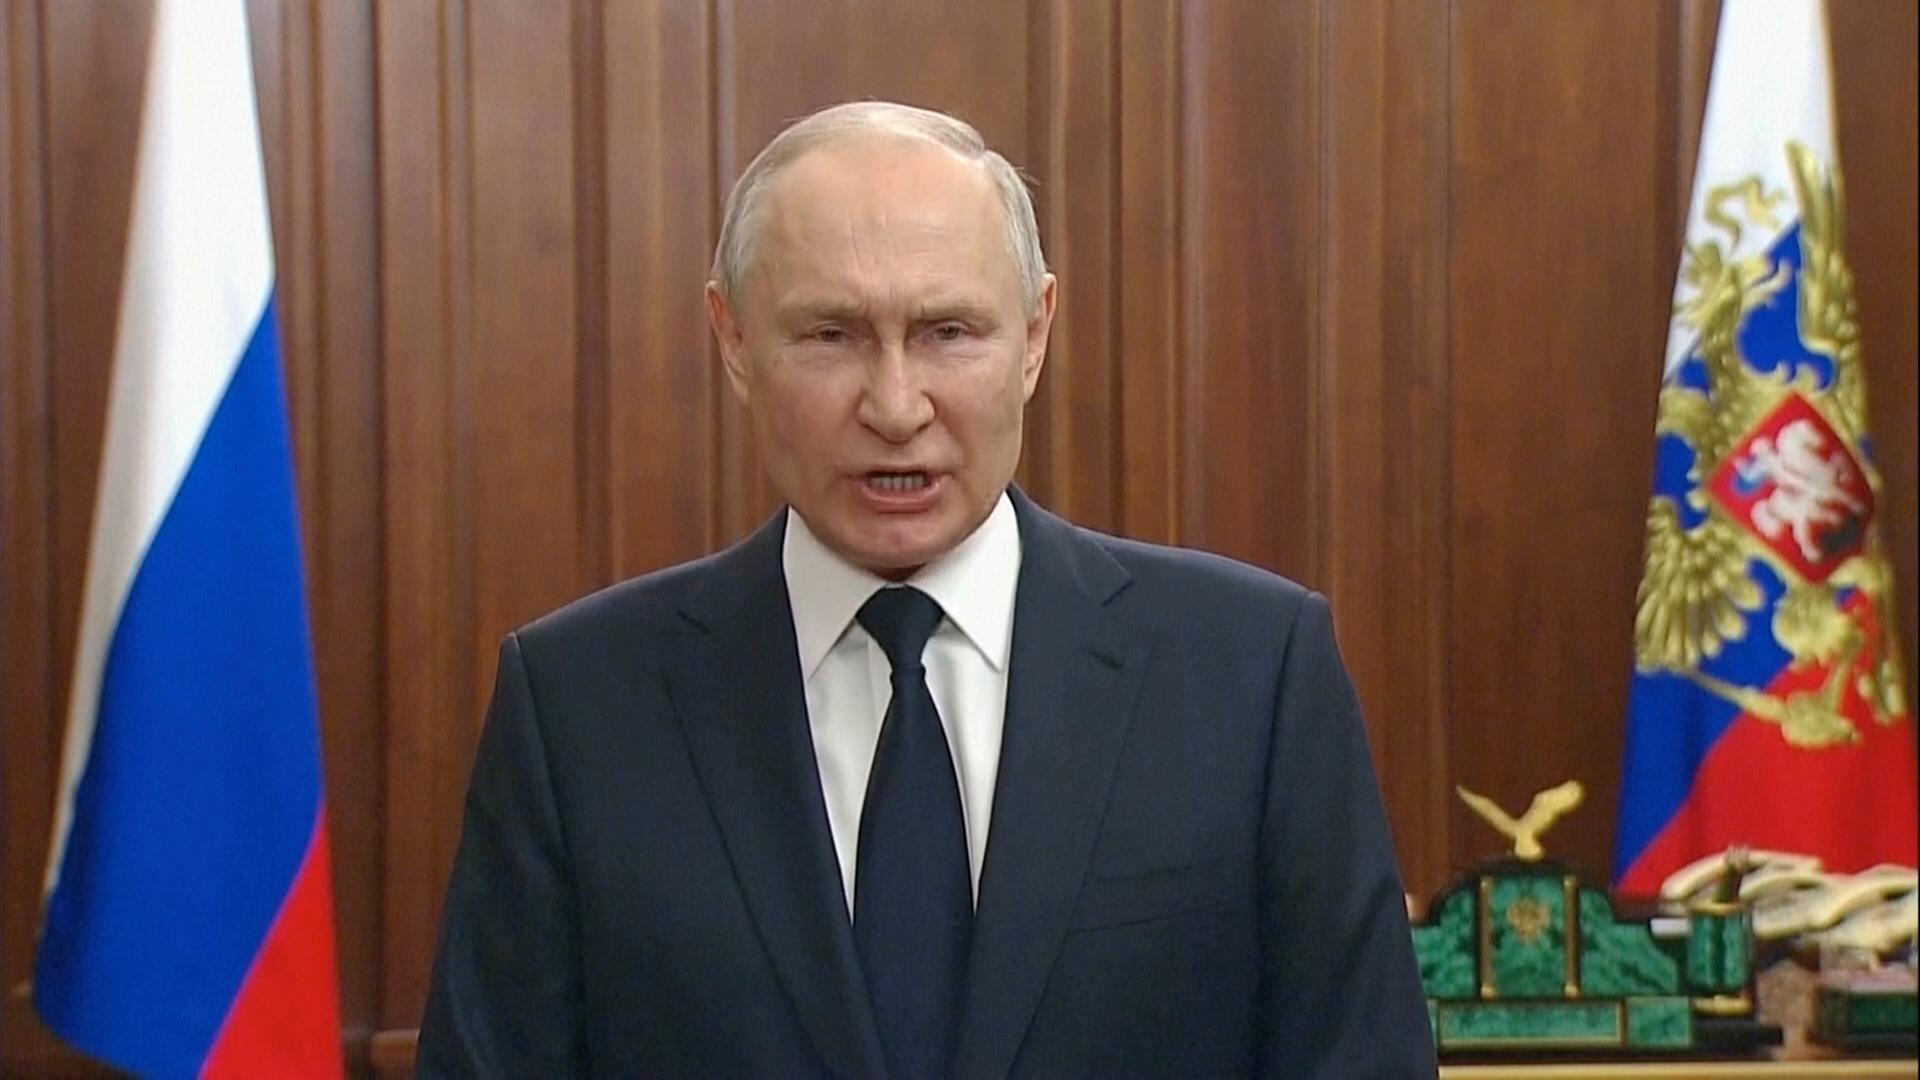 Dieses vom Pressedienst des russischen Präsidenten zur Verfügung gestellte Videostandbild zeigt Wladimir Putin, Präsident von Russland, während einer Ansprache an die Nation.